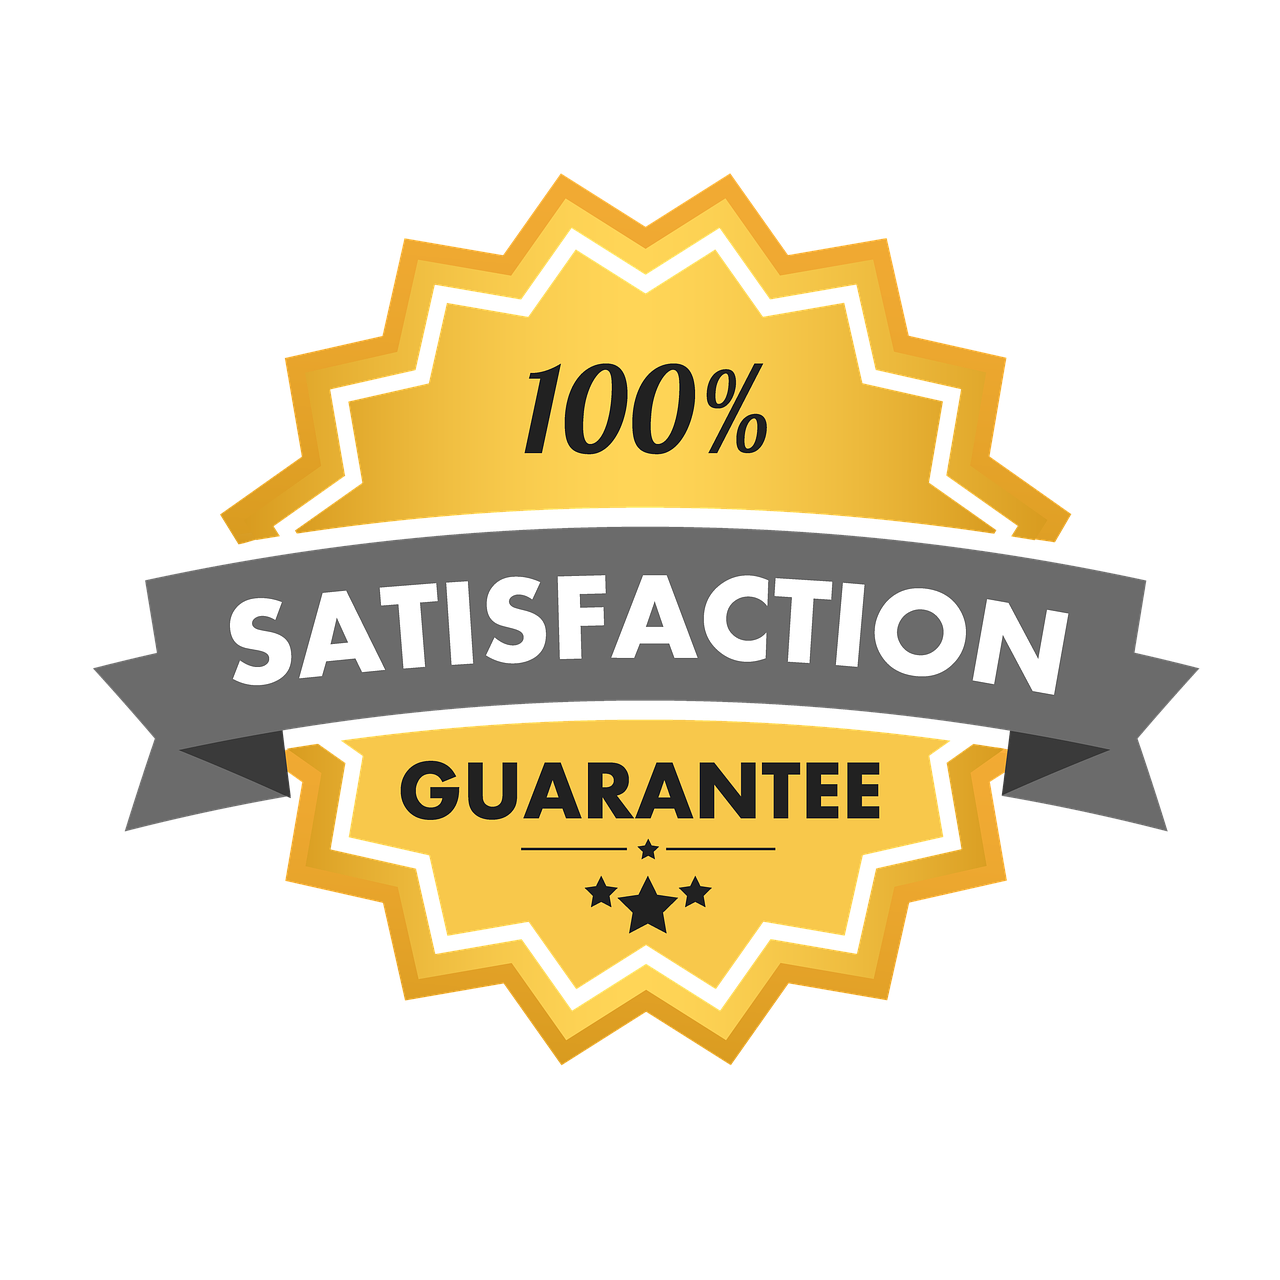 satisfaction-guarantee-54e1d54a48_1280